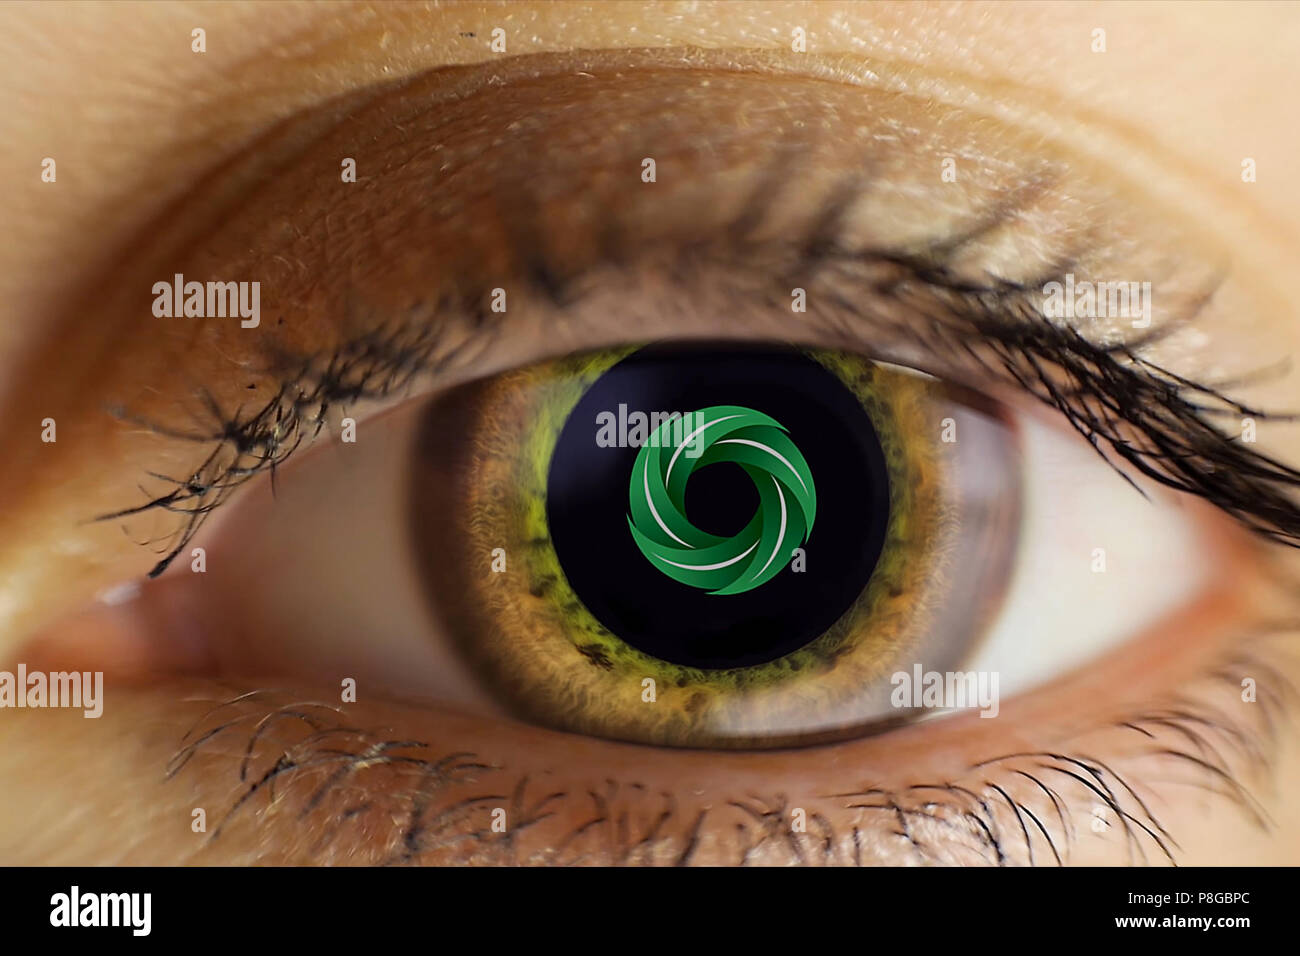 Die menschlichen weiblichen Auge ist hellbraun. Bemalte Muster innerhalb  der Pupille, Animation. Auge schließen Stockfotografie - Alamy